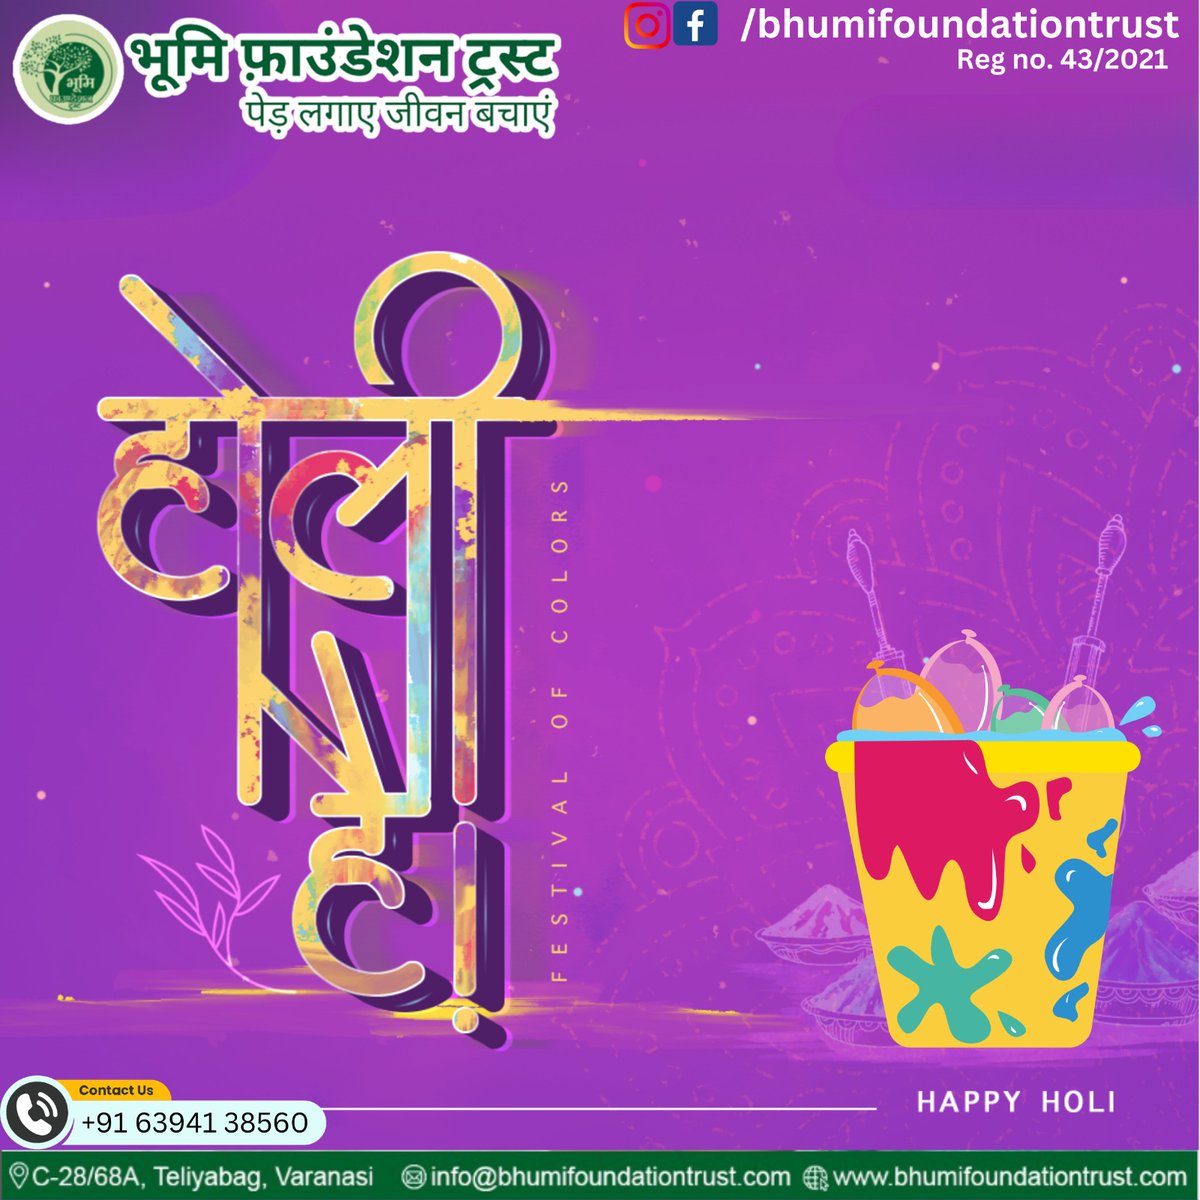 रंगों की बारिश, खुशियों का त्योहार, होली की हार्दिक शुभकामनाएं!

#happyholi #festivalofcolour #holi #happyholi2024